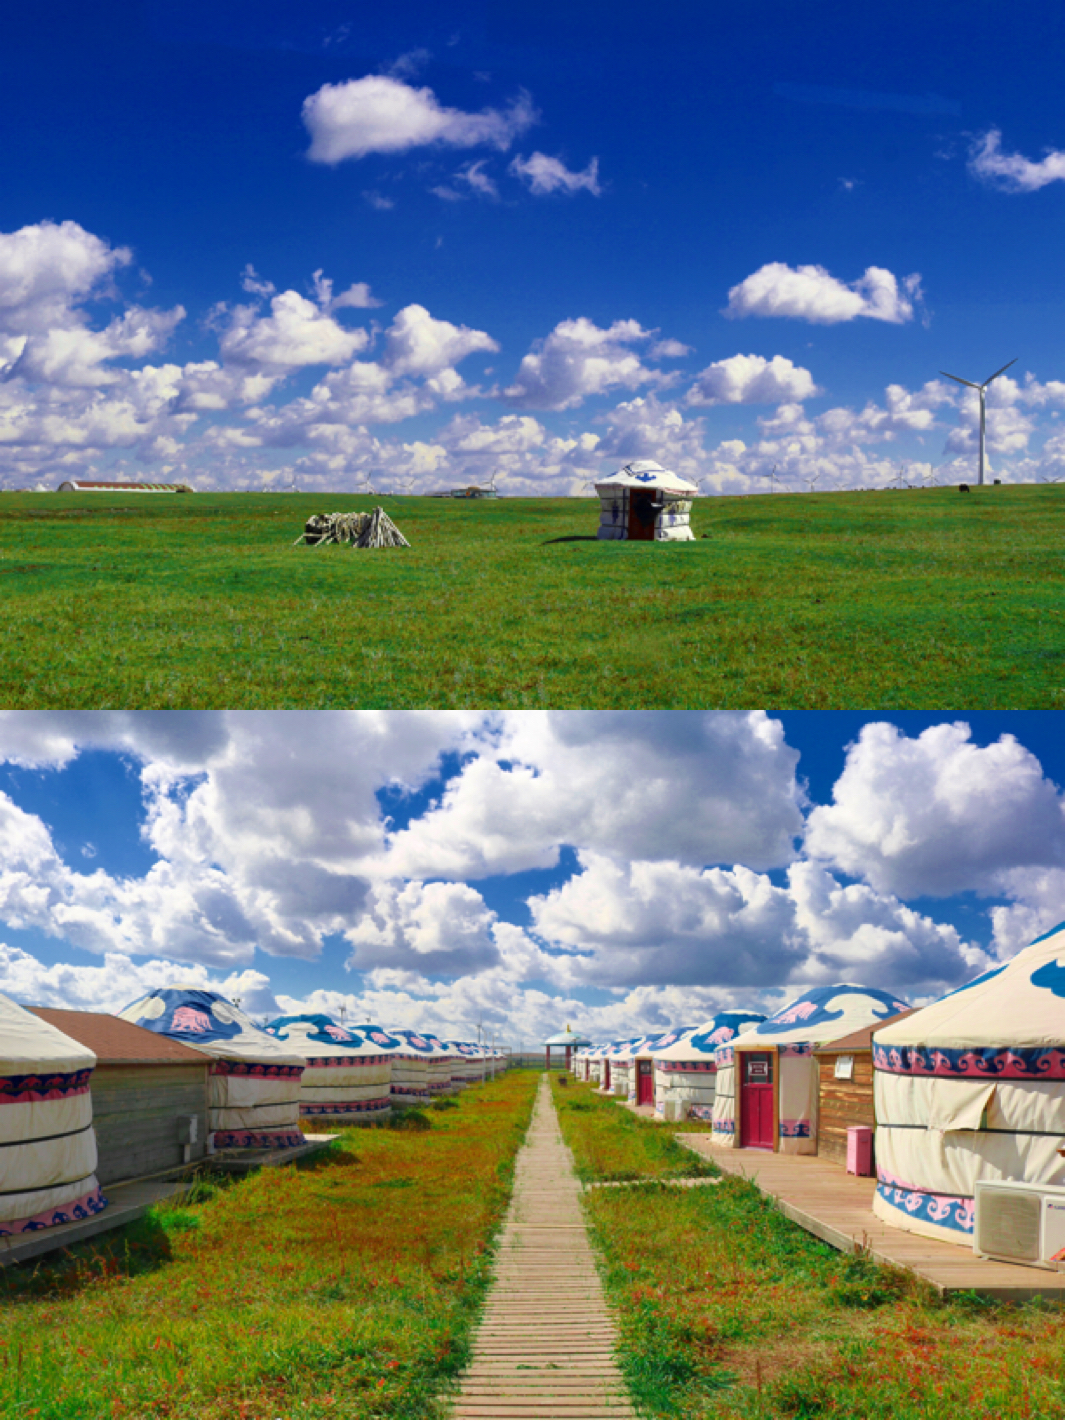 一定要去一趟内蒙古，辉腾锡勒草原感受圣洁的蒙古包